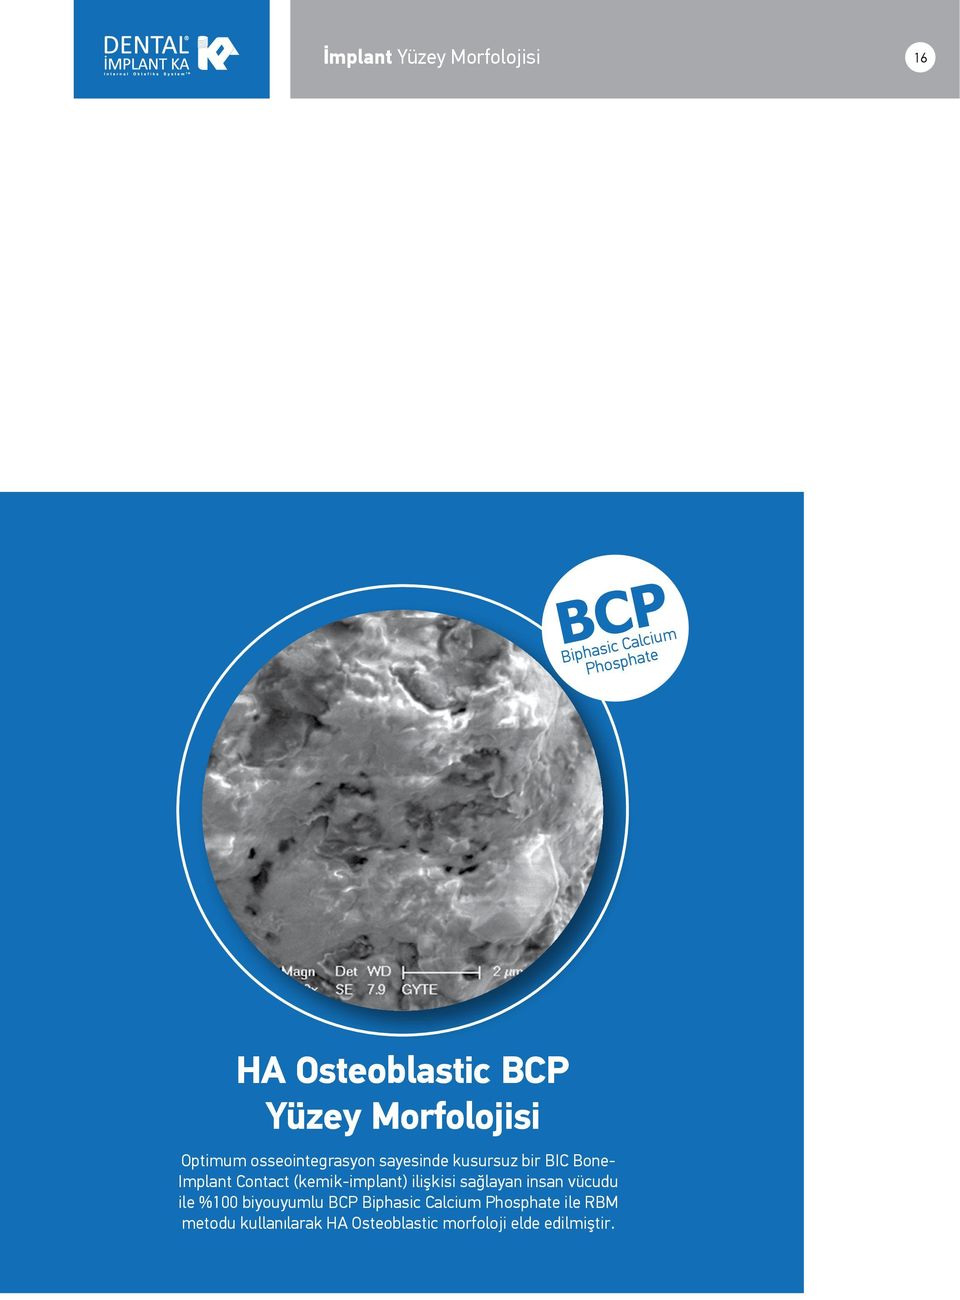 Contact (kemik-implant) ilişkisi sağlayan insan vücudu ile %100 biyouyumlu BCP